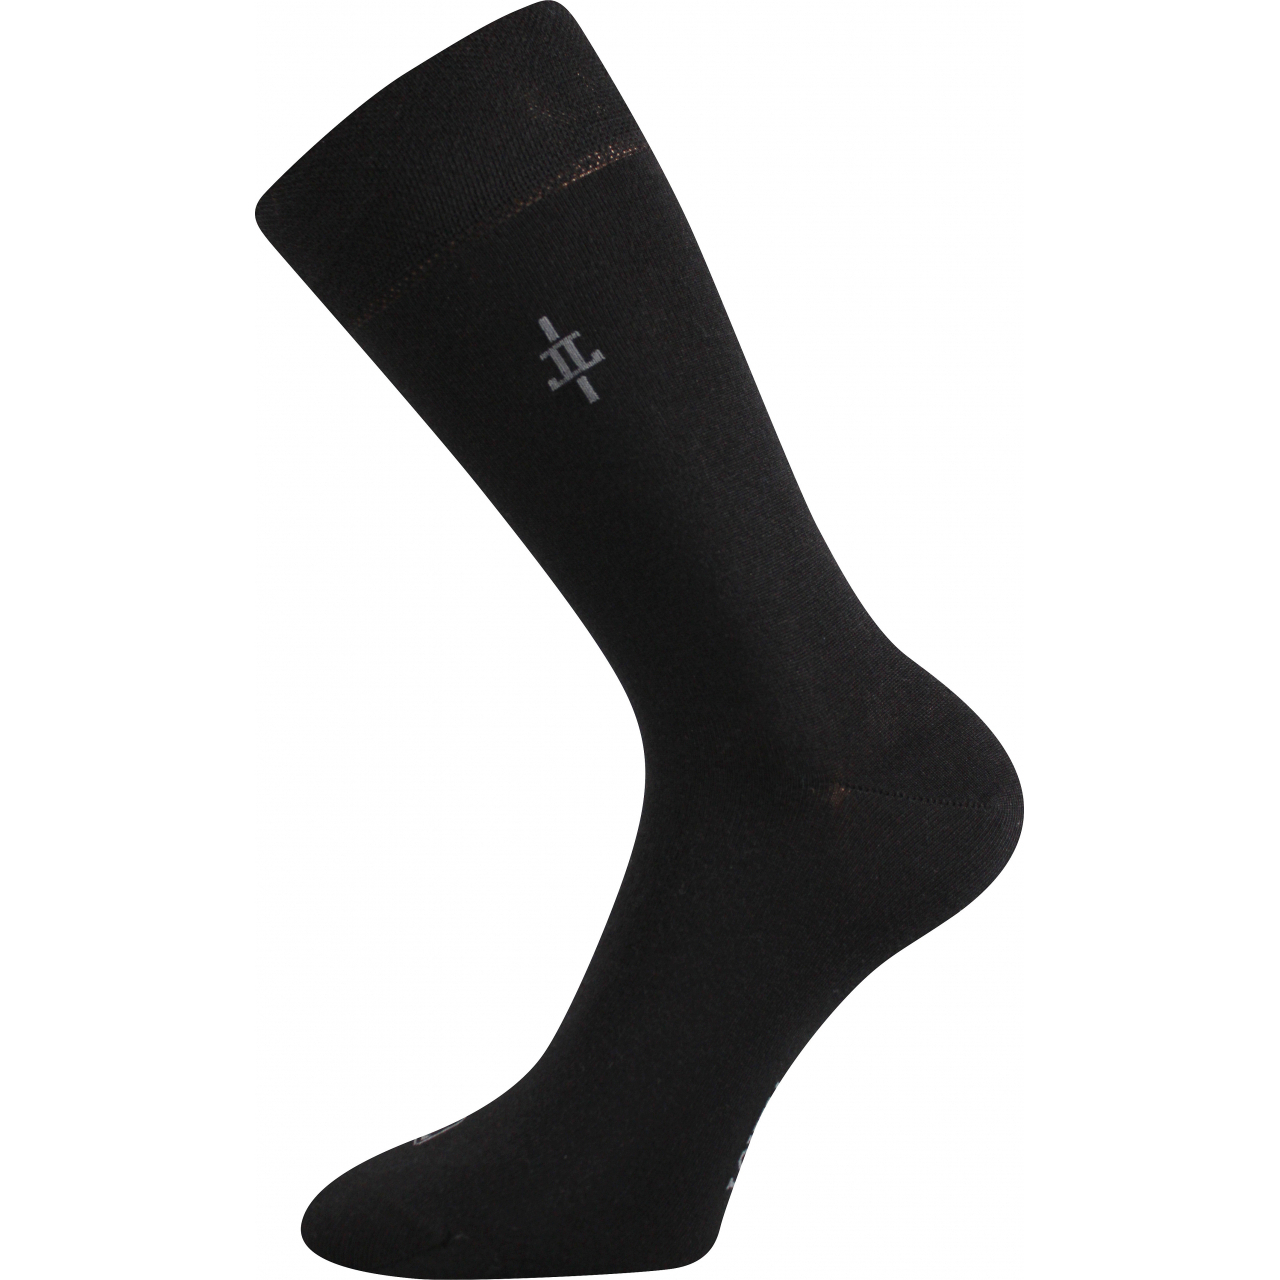 Ponožky pánské společenské Lonka Mopak - černé, 43-46